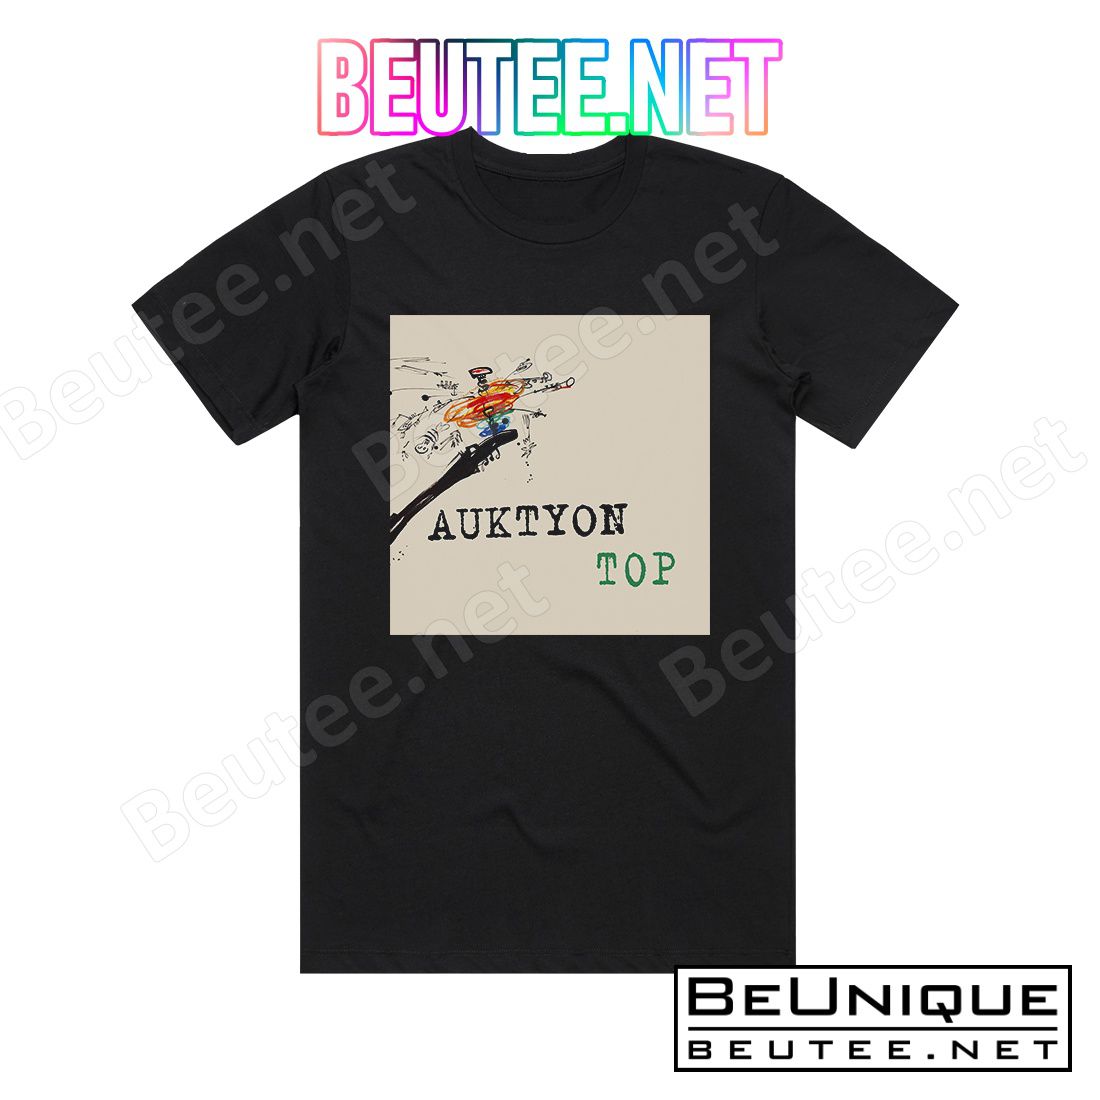 Auktyon Top Album Cover T-Shirt